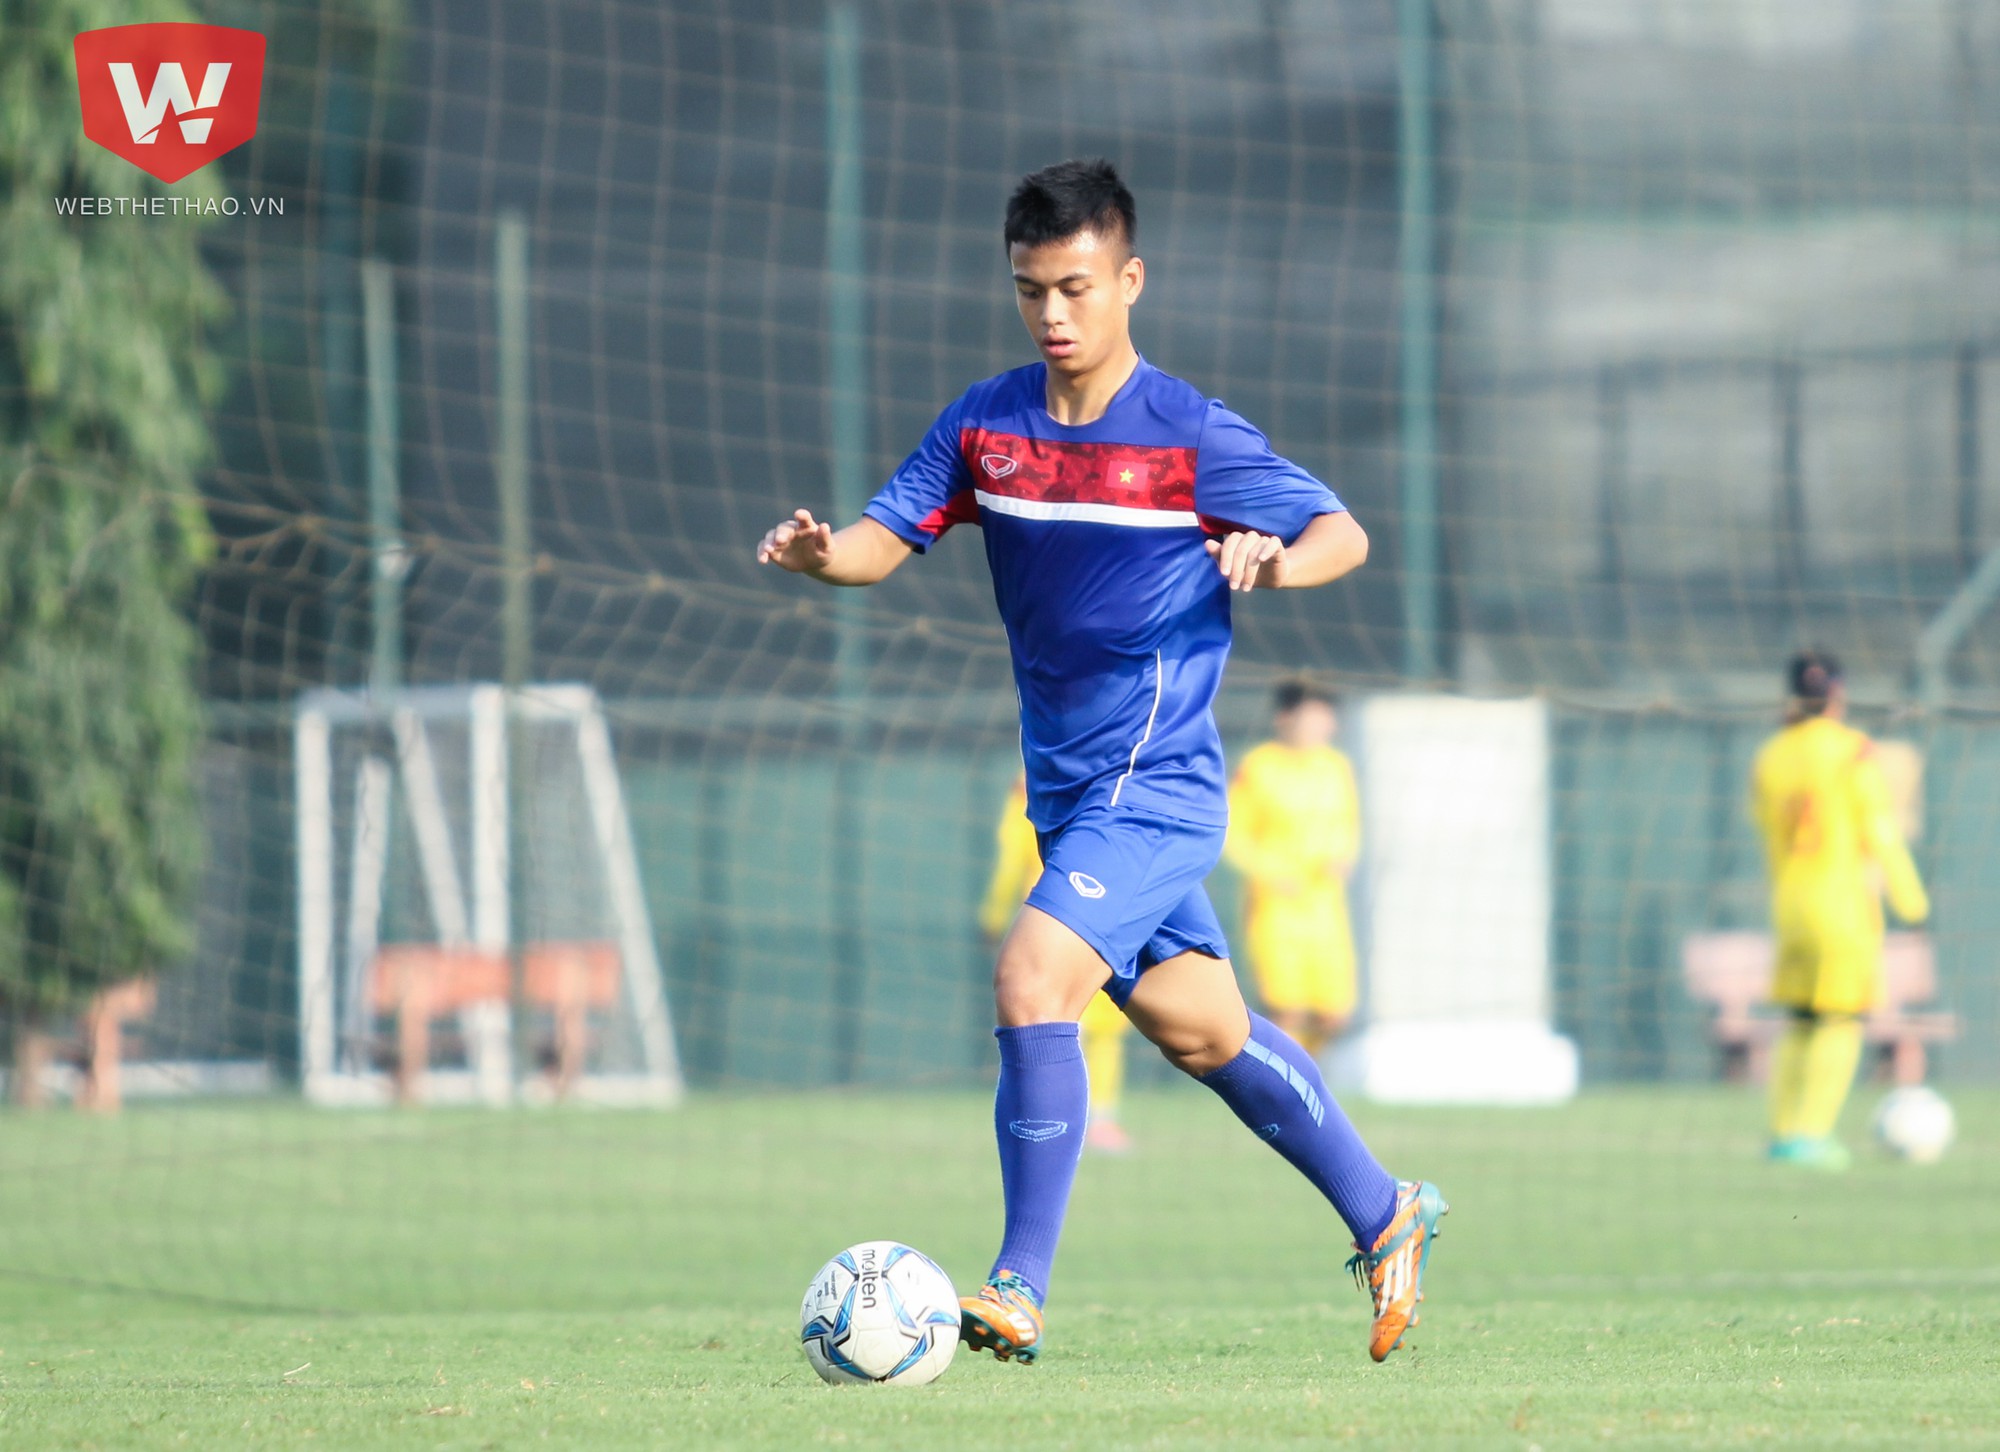 Tiền đạo Khắc Khiêm là cầu thủ duy nhất trong đội U19 Việt Nam hiện tại từng tham dự một sân chơi châu lục (U16 châu Á 2016). Ảnh: Trung Thu.